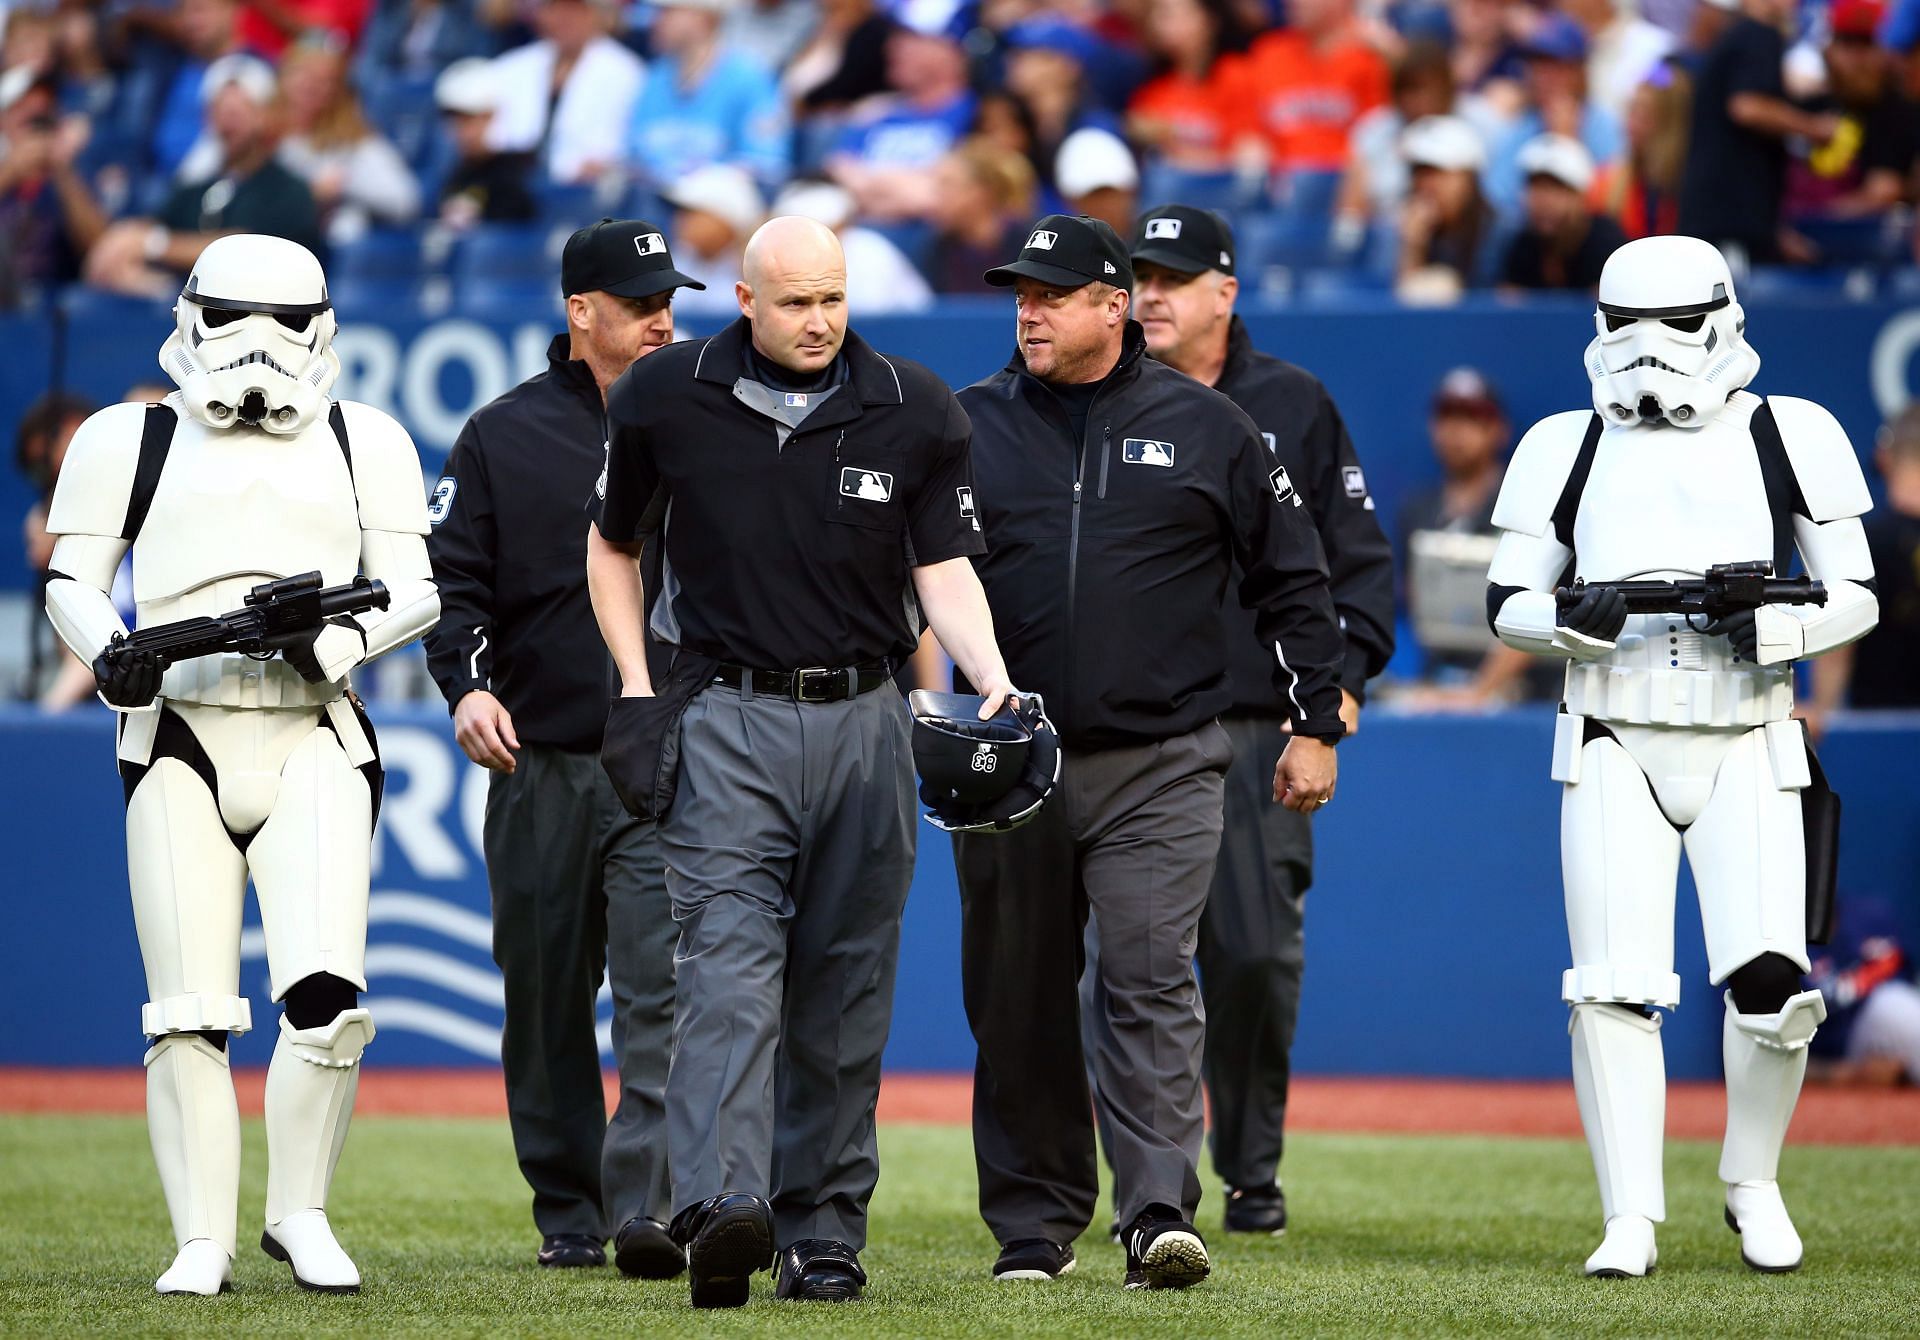 Pulaski Yankees Put a Twist on Star Wars Night